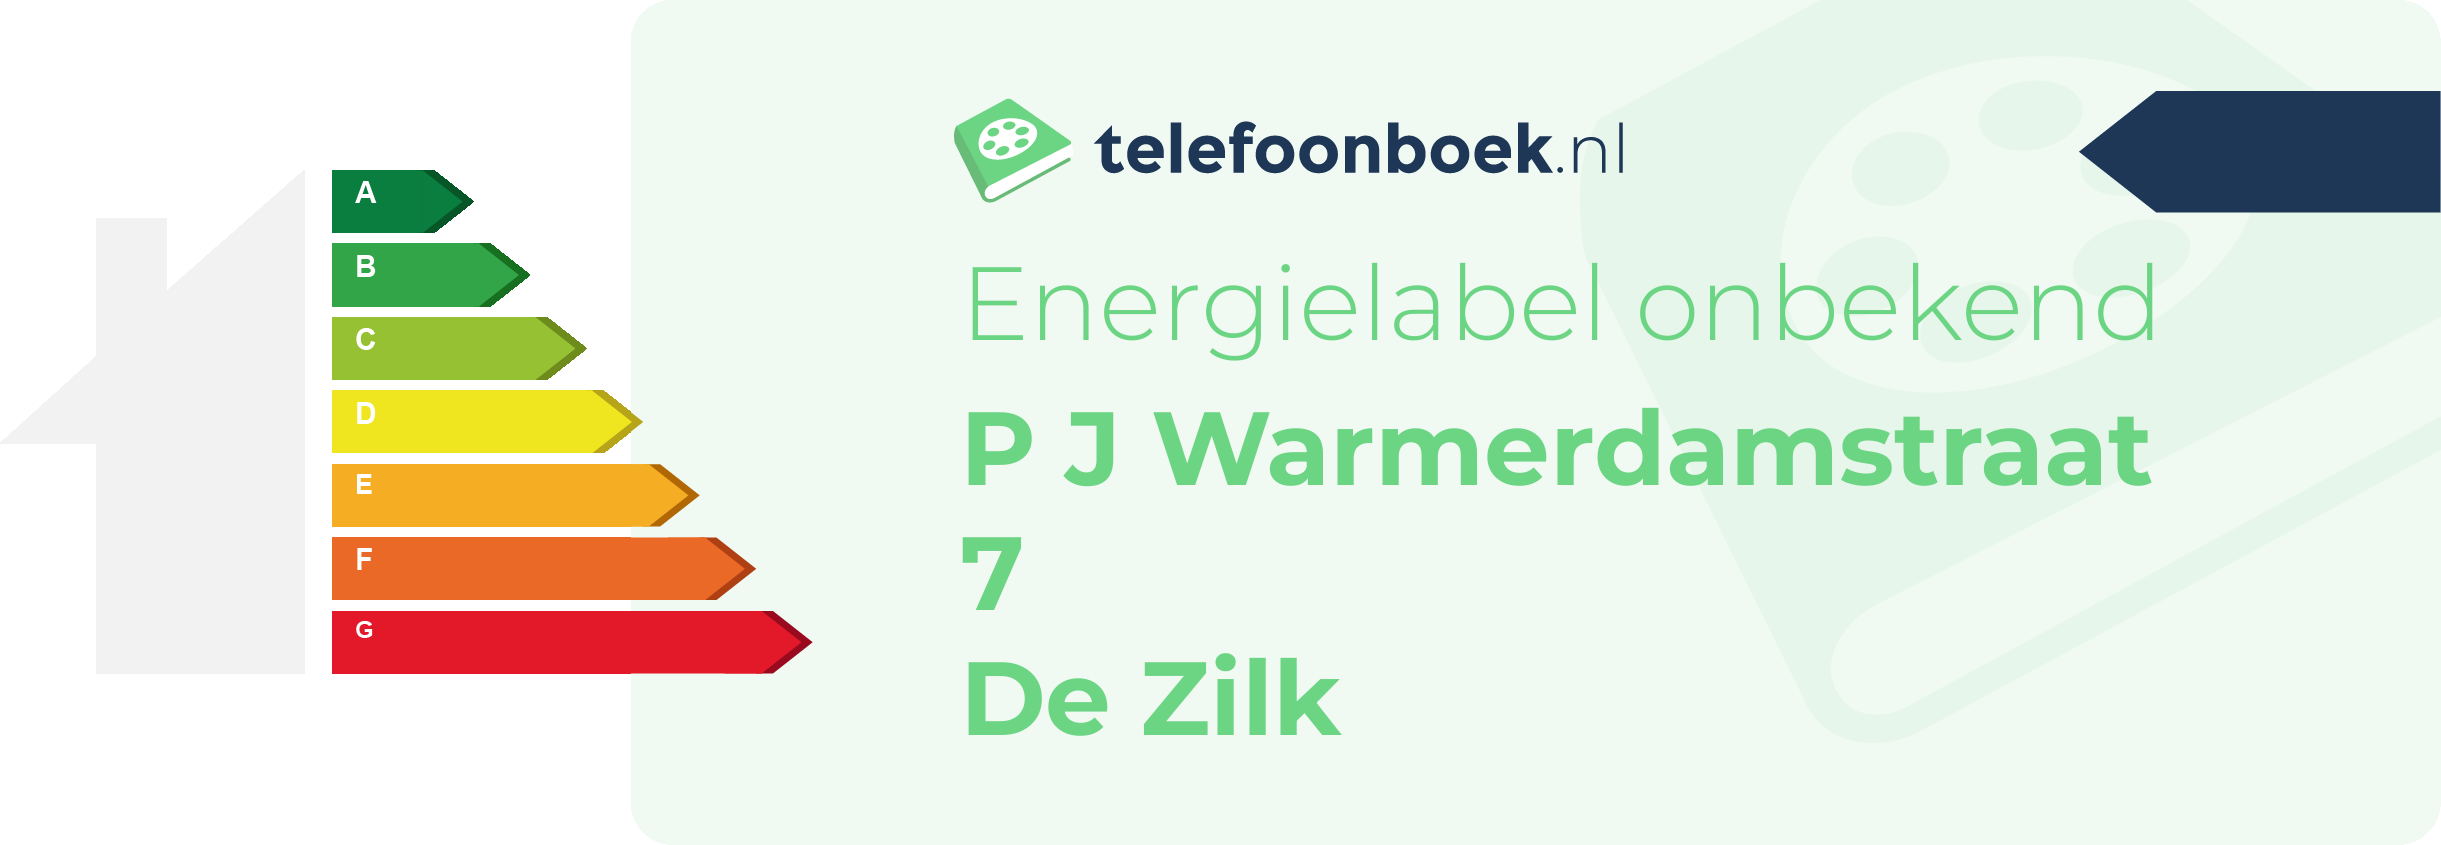 Energielabel P J Warmerdamstraat 7 De Zilk